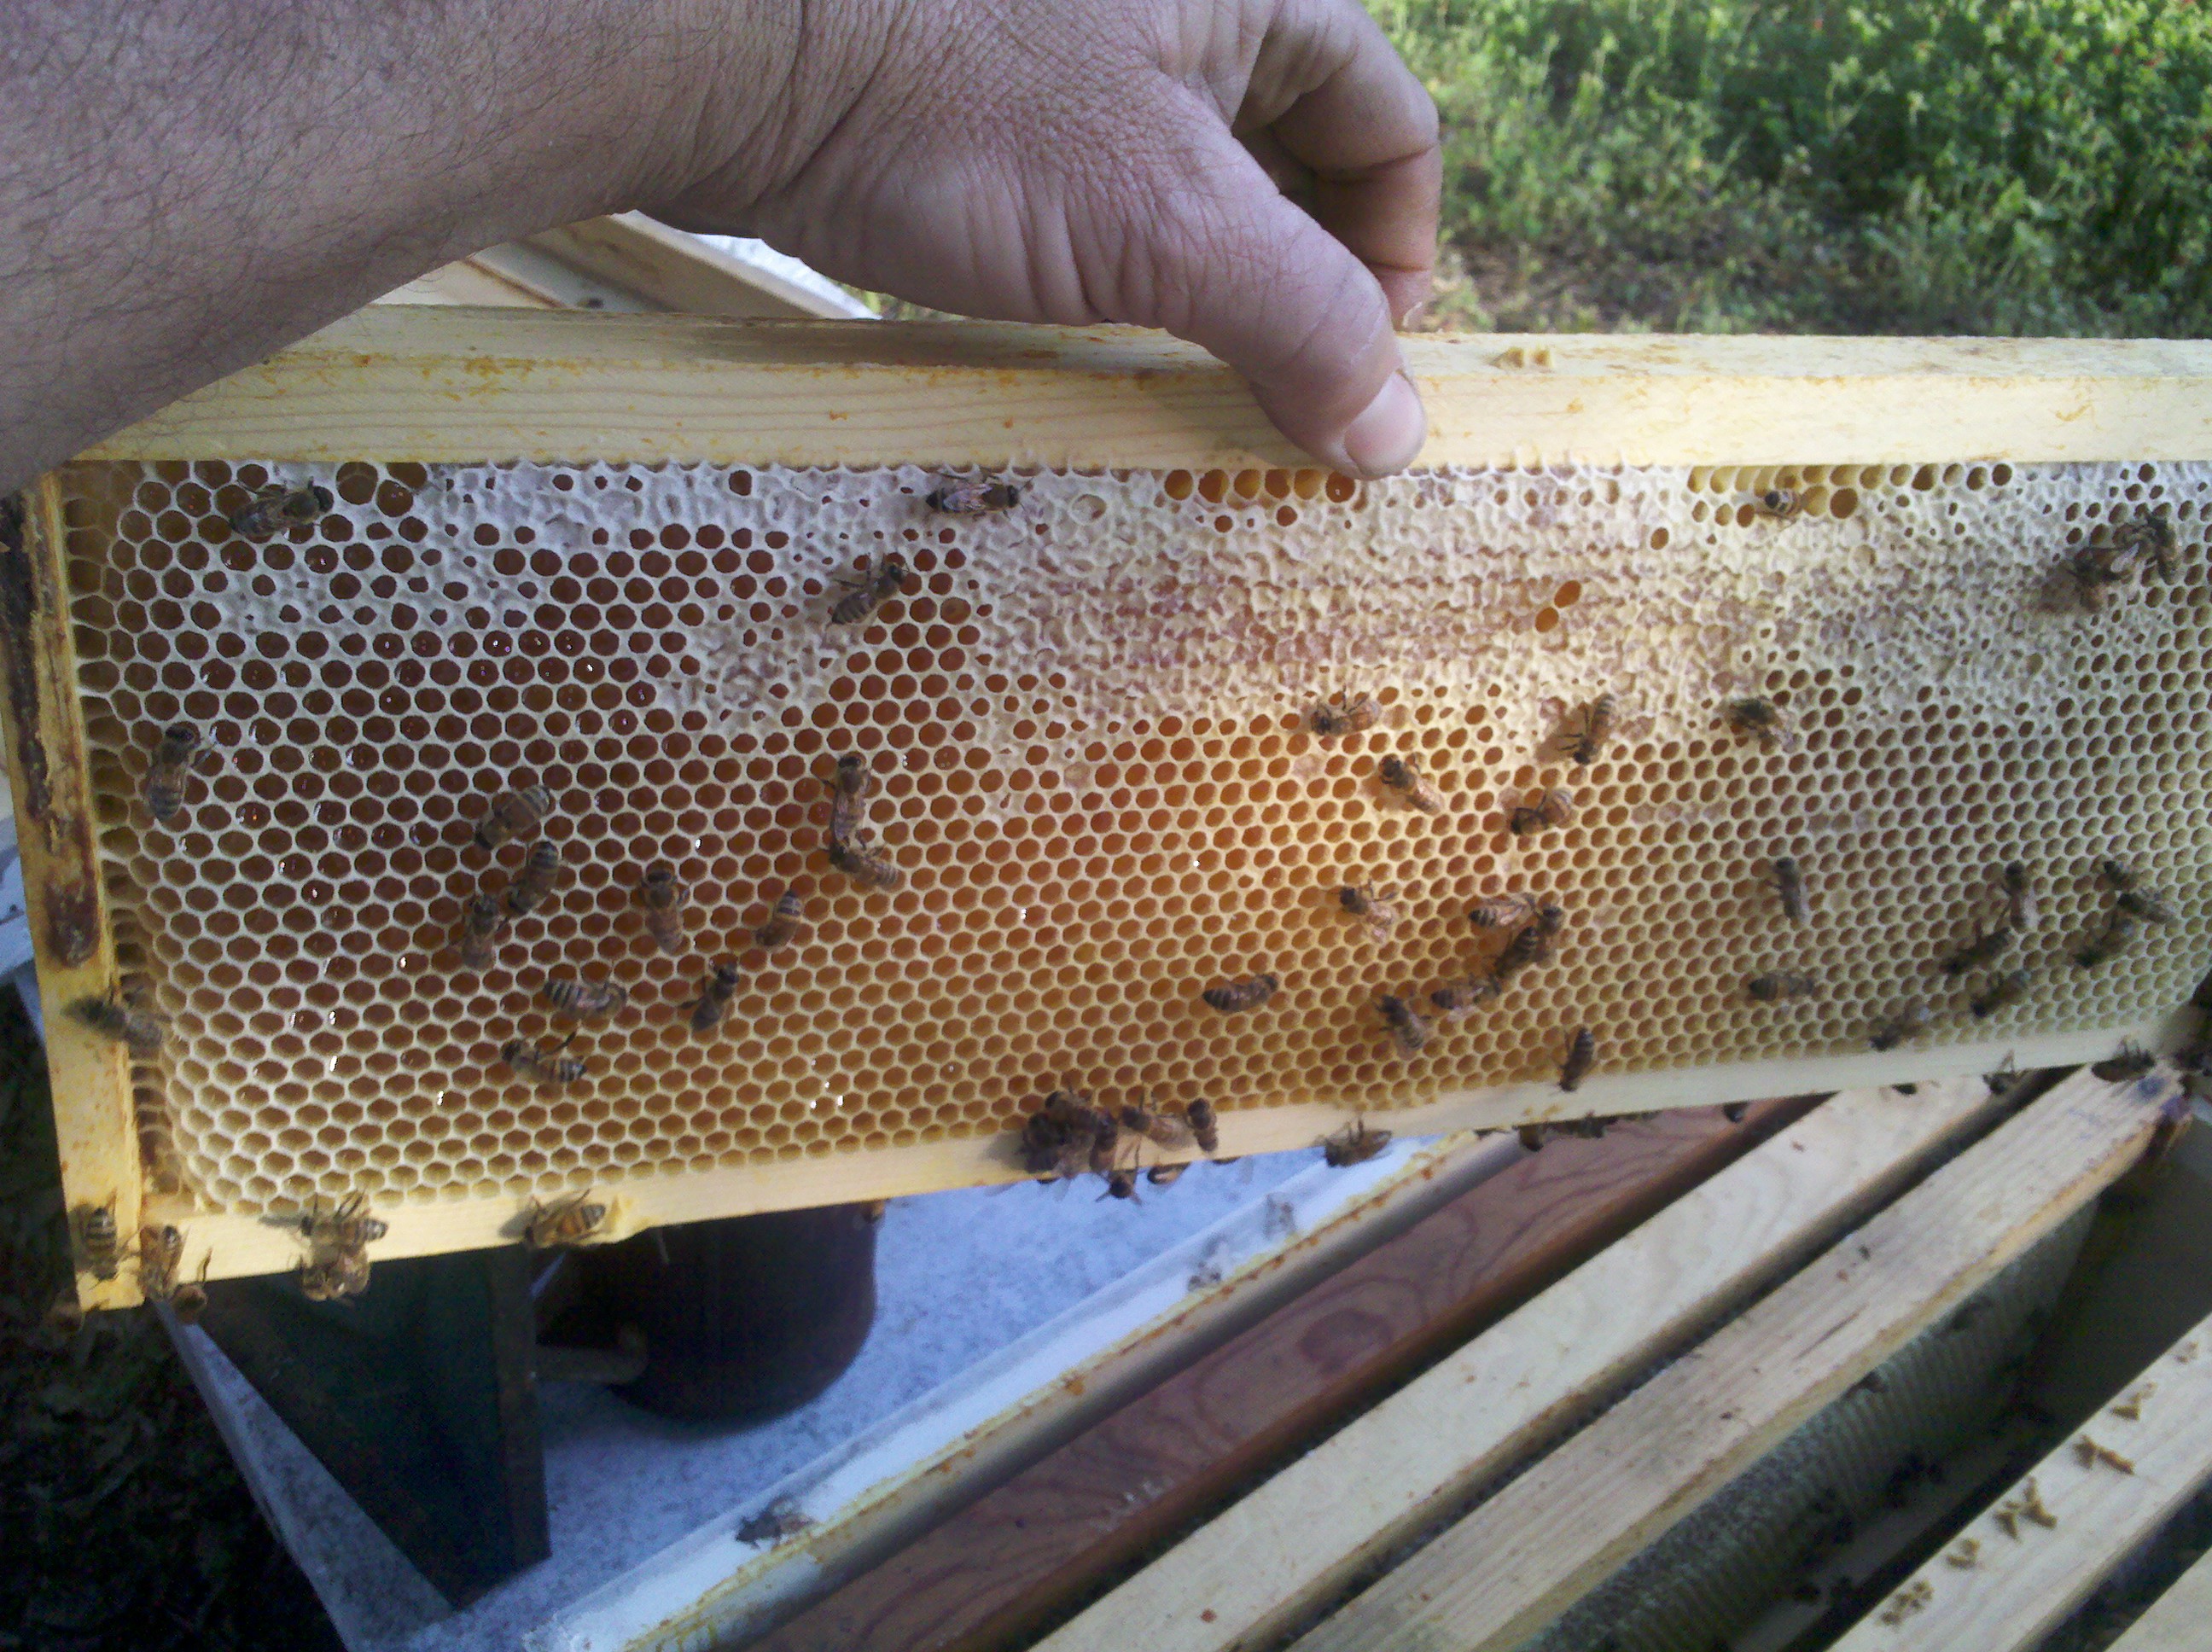 Starting to cap a full frame of honey